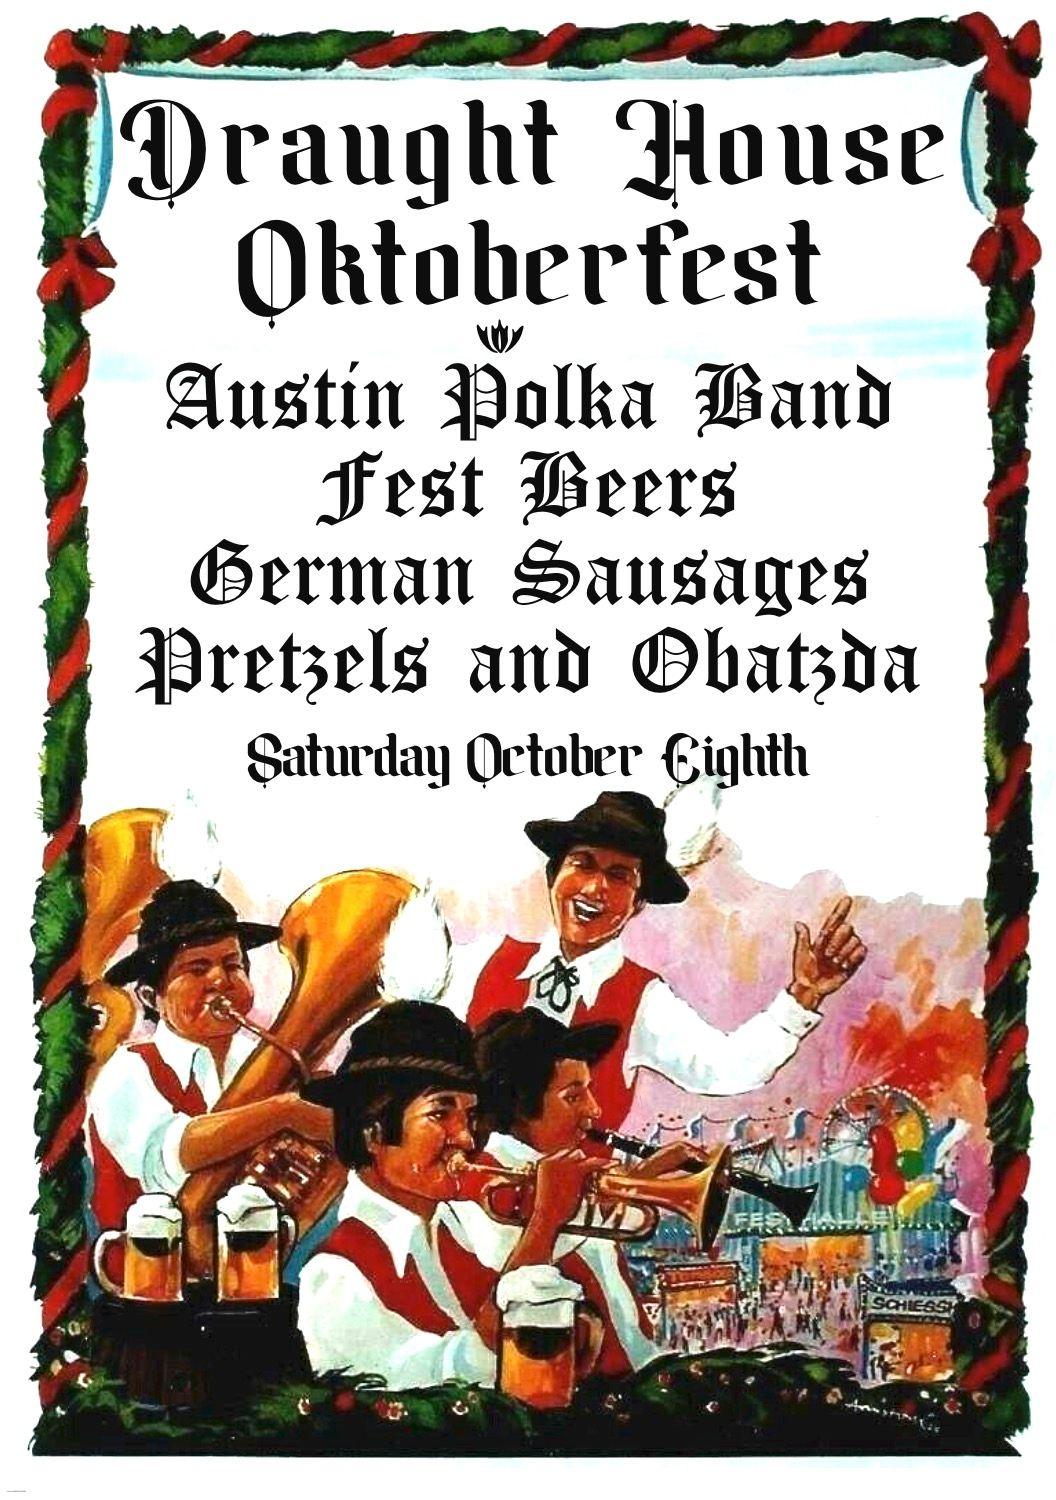 Oktoberfest @ Draught House
Sun Oct 9, 2:00 PM - Mon Oct 10, 12:00 AM